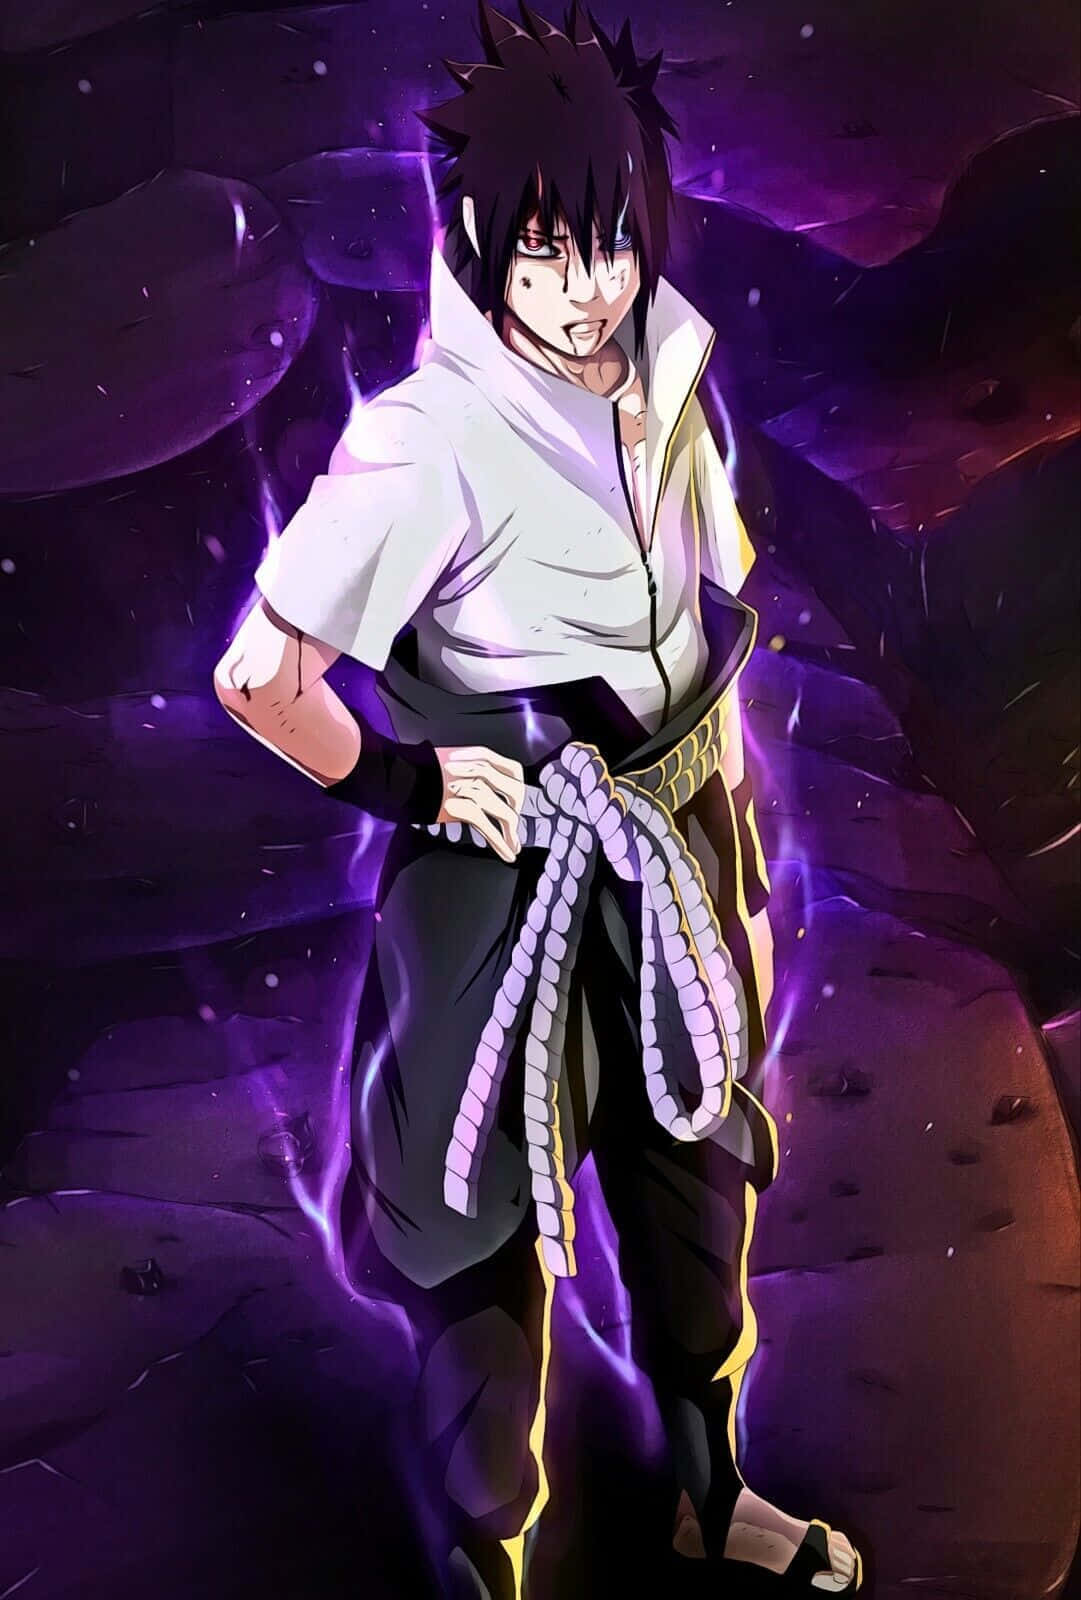 Sasuke Uchiha - a Beloved Ninja from the Anime Series Naruto